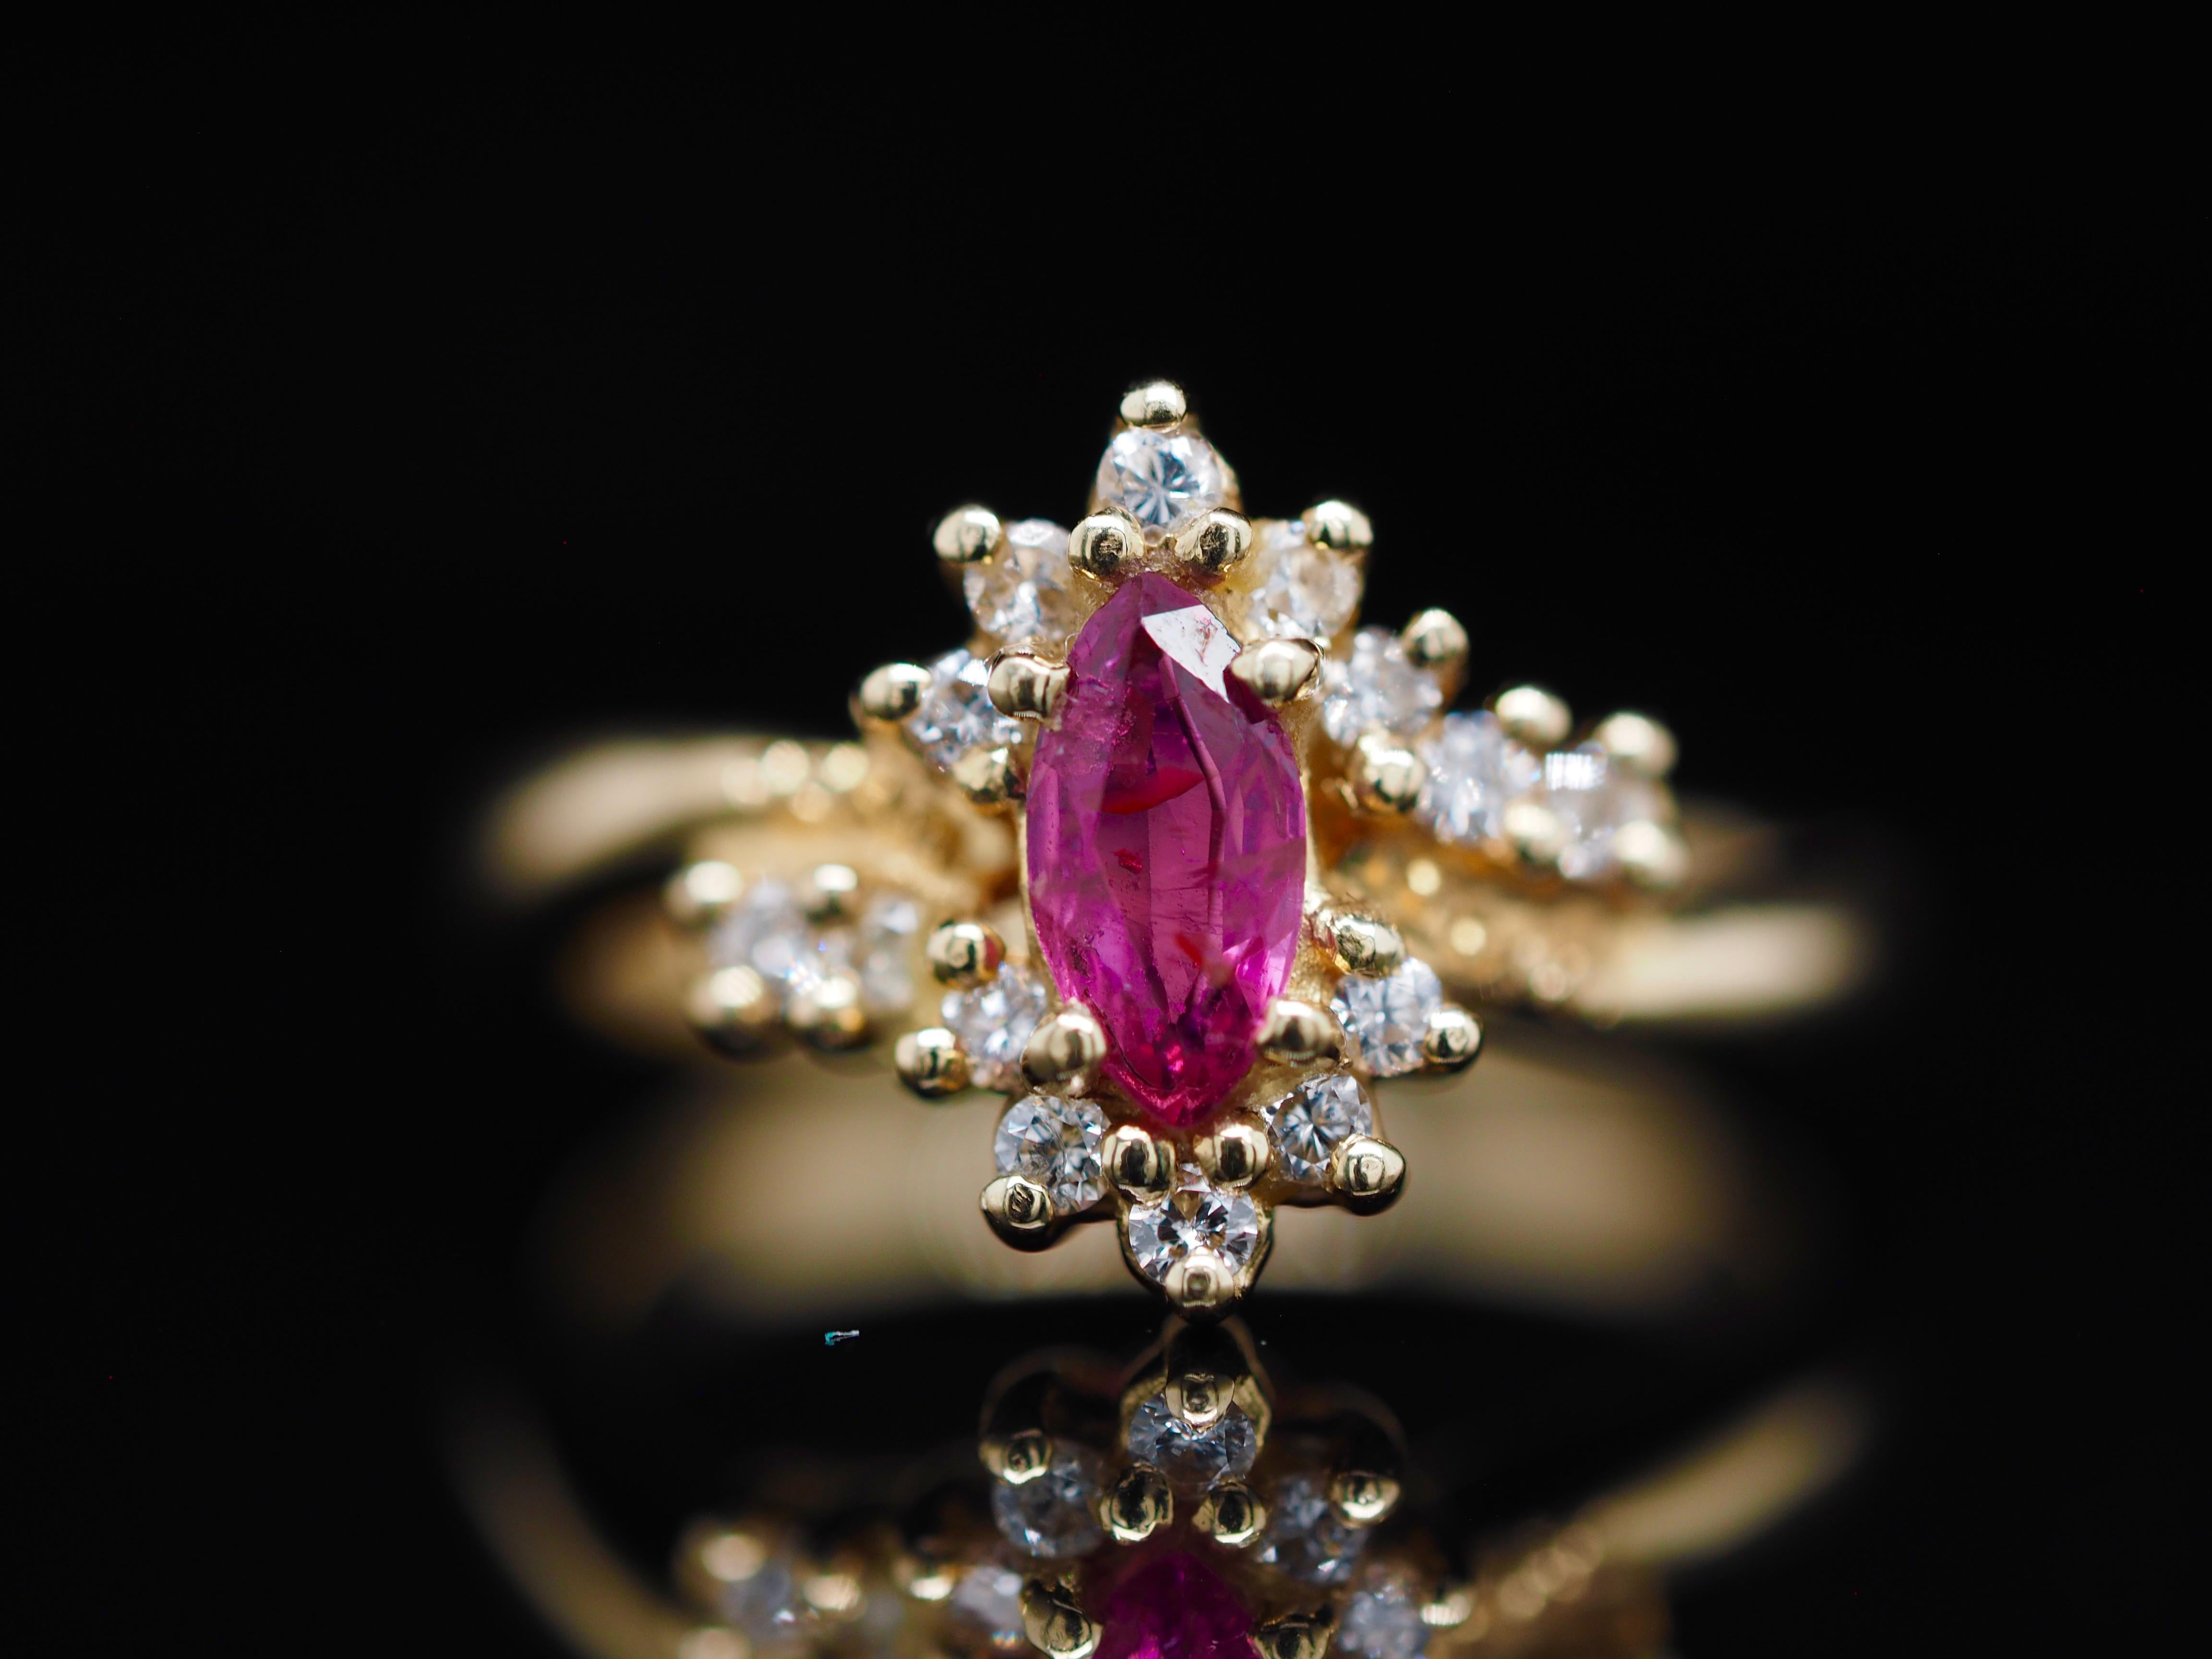 Ein Retro-Ring ist immer das perfekte Accessoire. Dieser leuchtend rosafarbene Marquise-Saphir ist mit einer Starburst aus runden Brillanten verziert. Es ist ein so kostbarer Ring, den man übereinander tragen kann oder der allein so viel Leben in